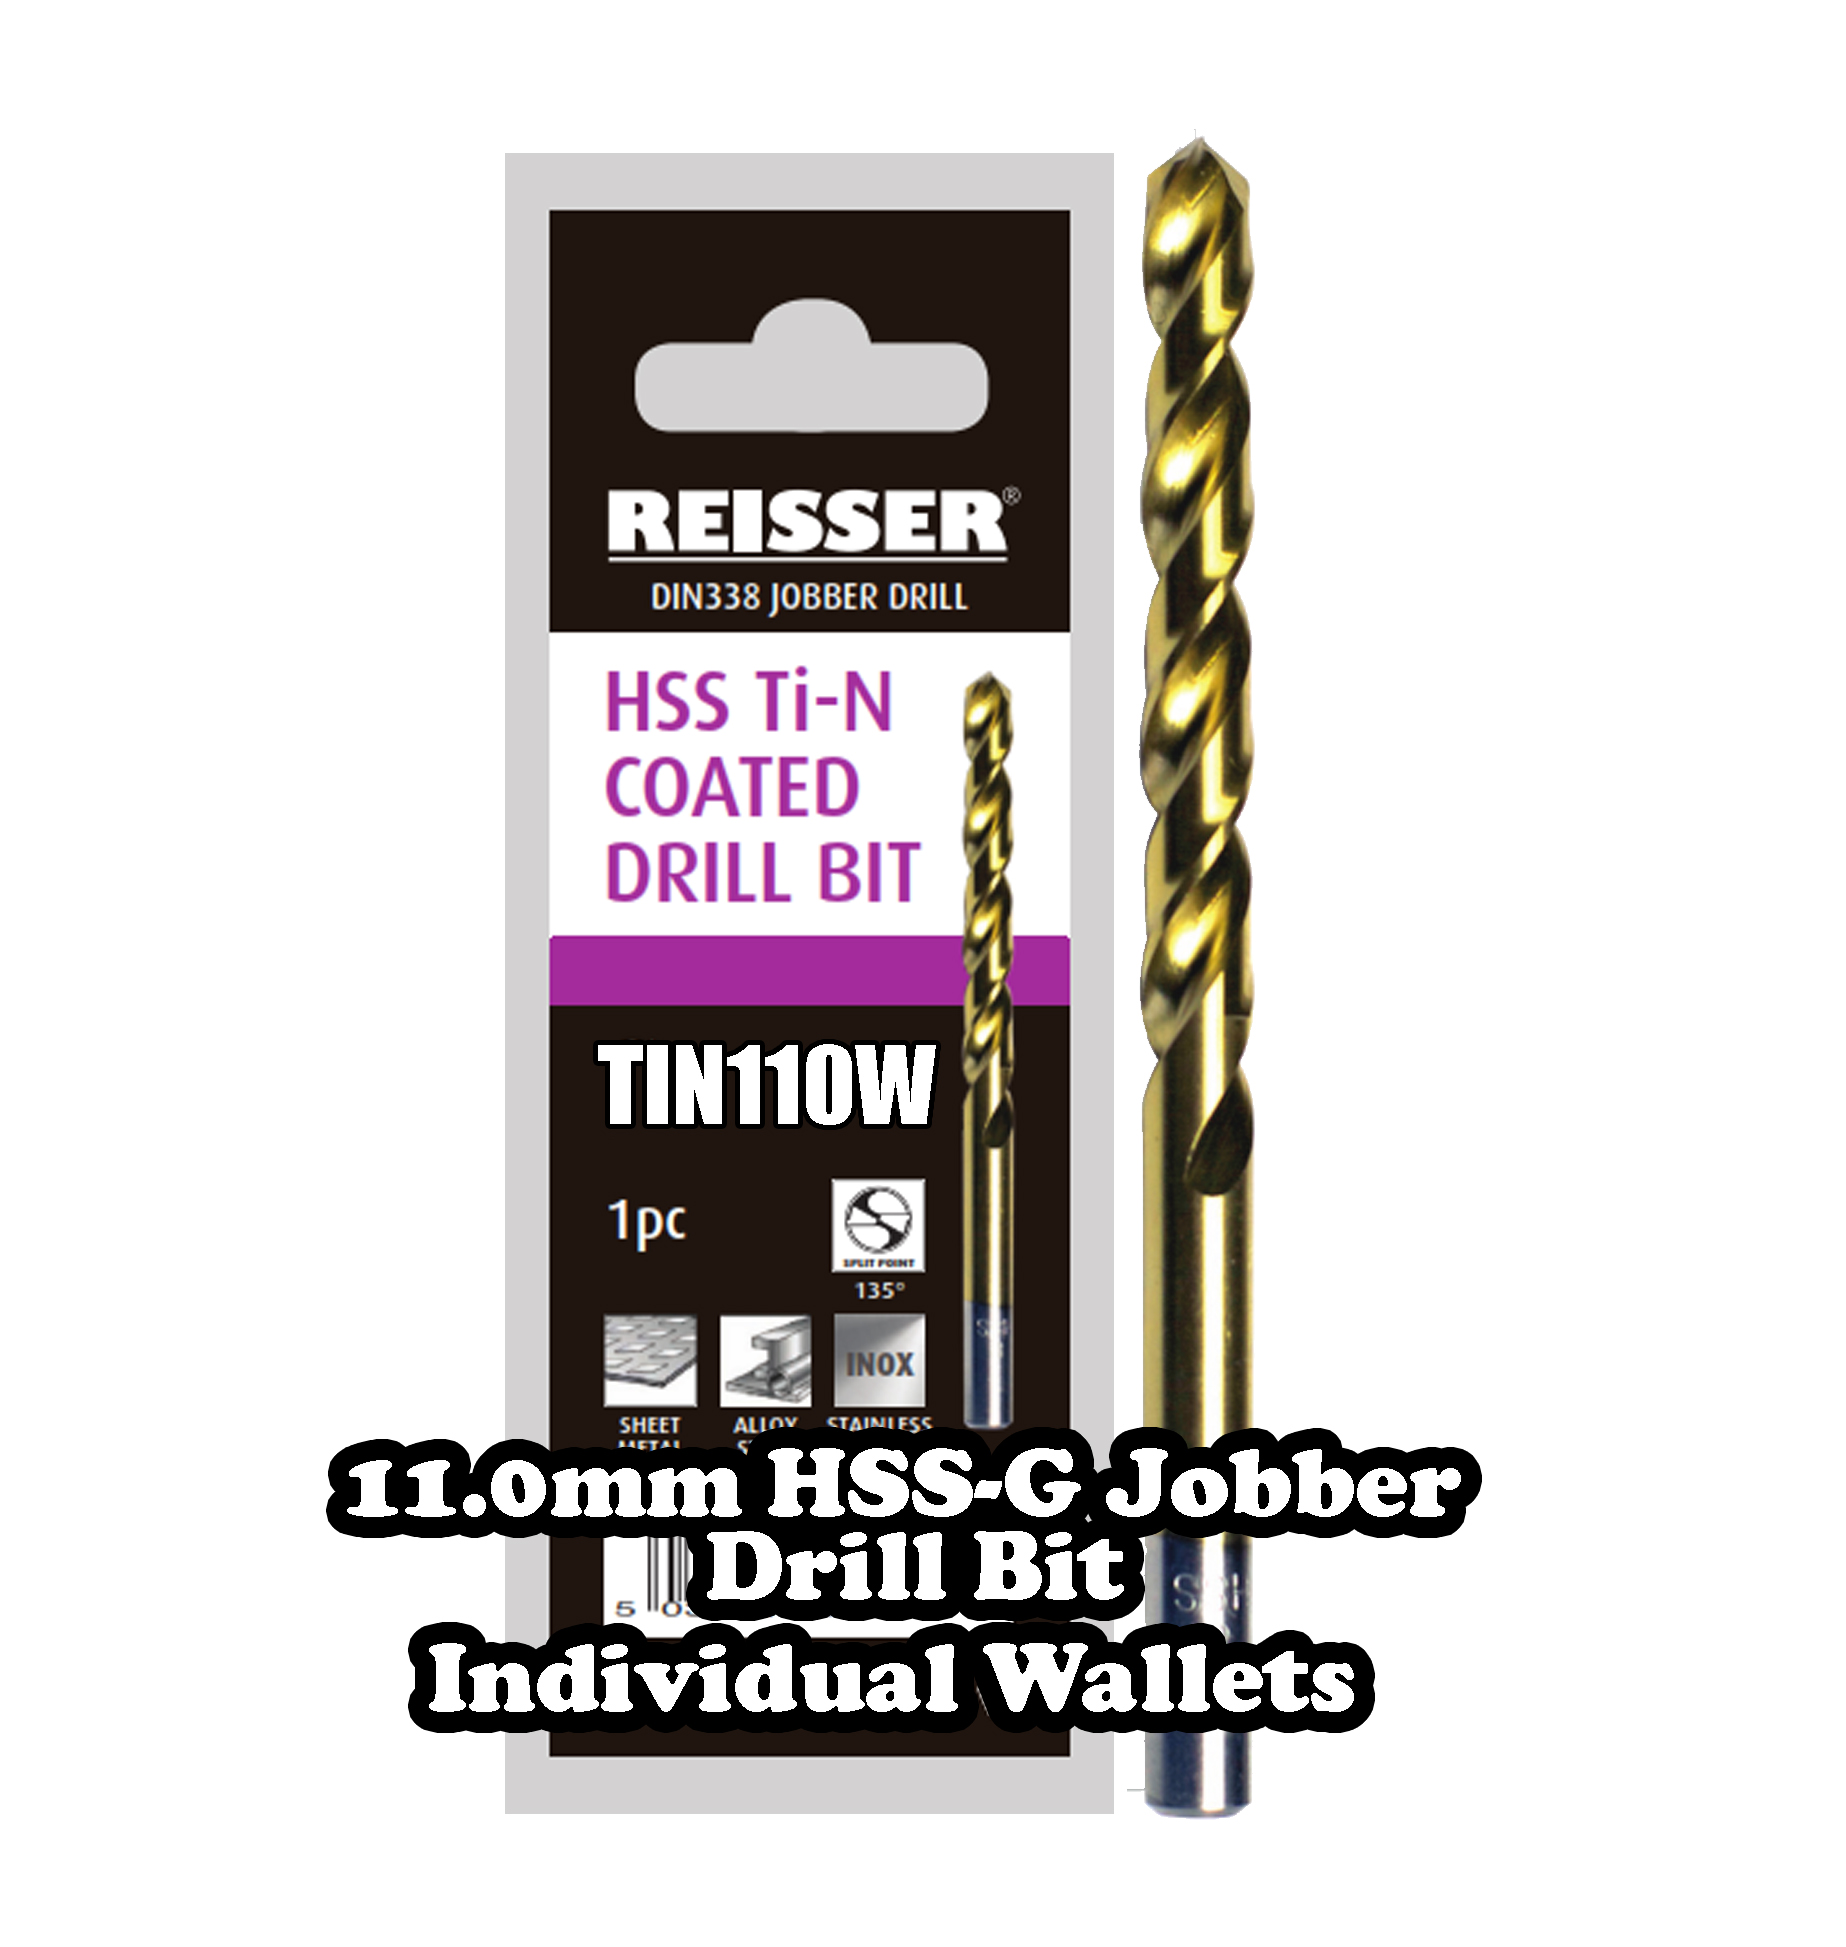 11.0mm HSS Jobber Drill Bit (SINGLE WALLET)